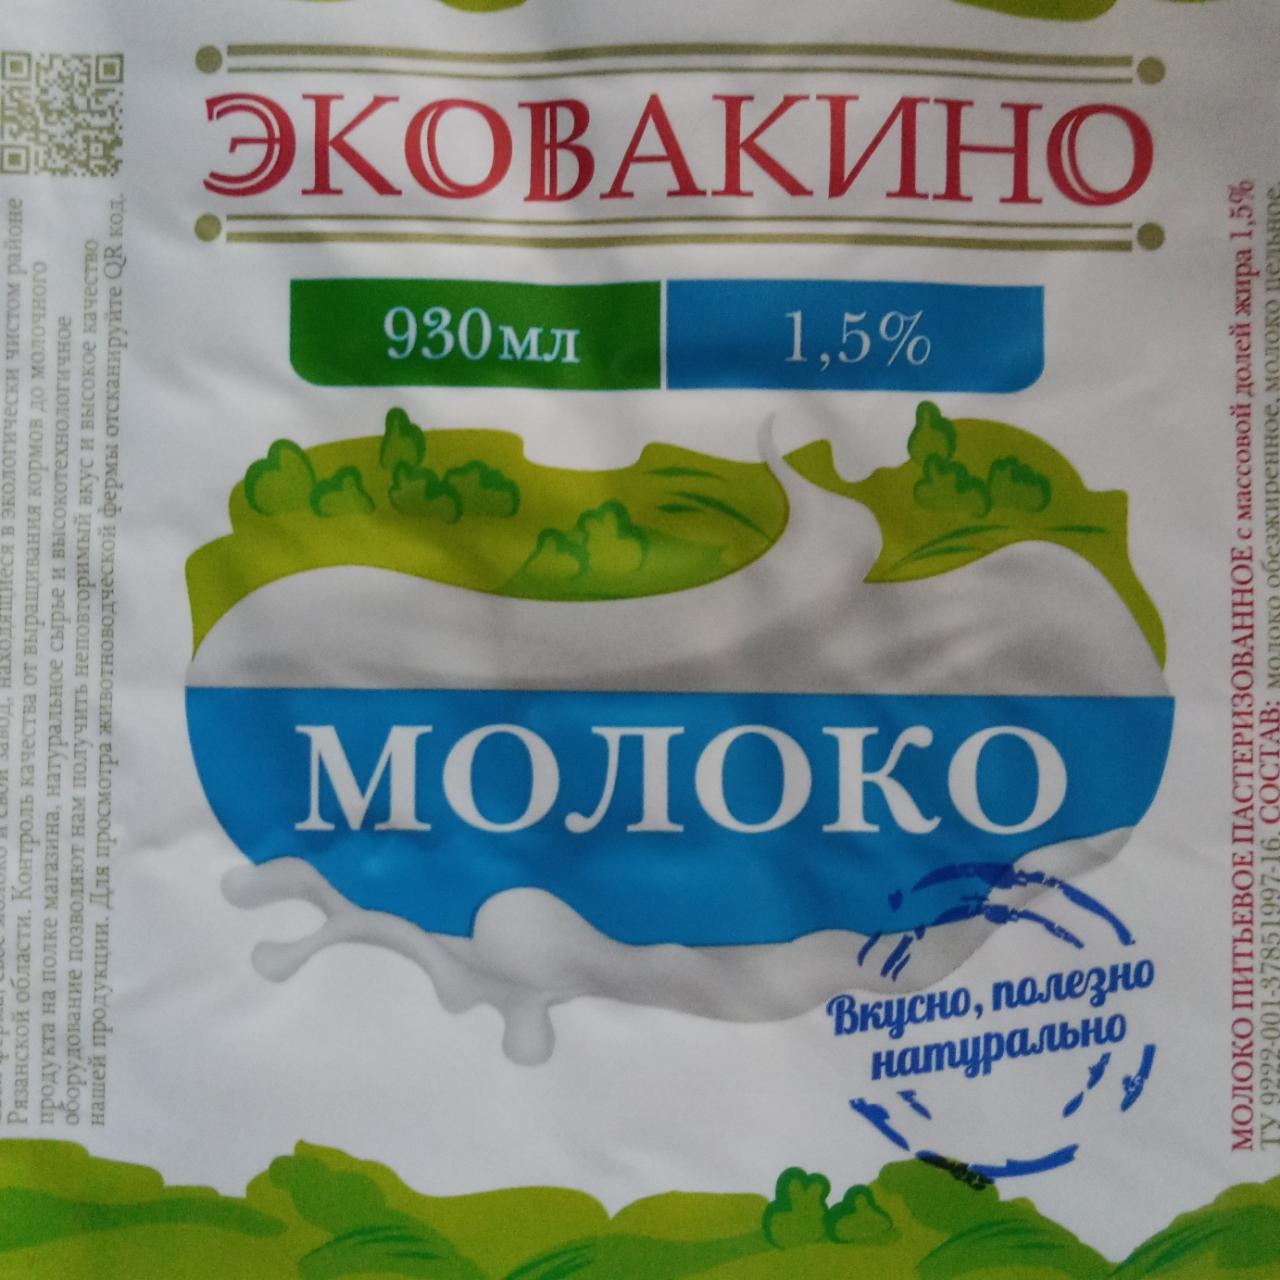 Фото - Молоко 1.5% Эковакино